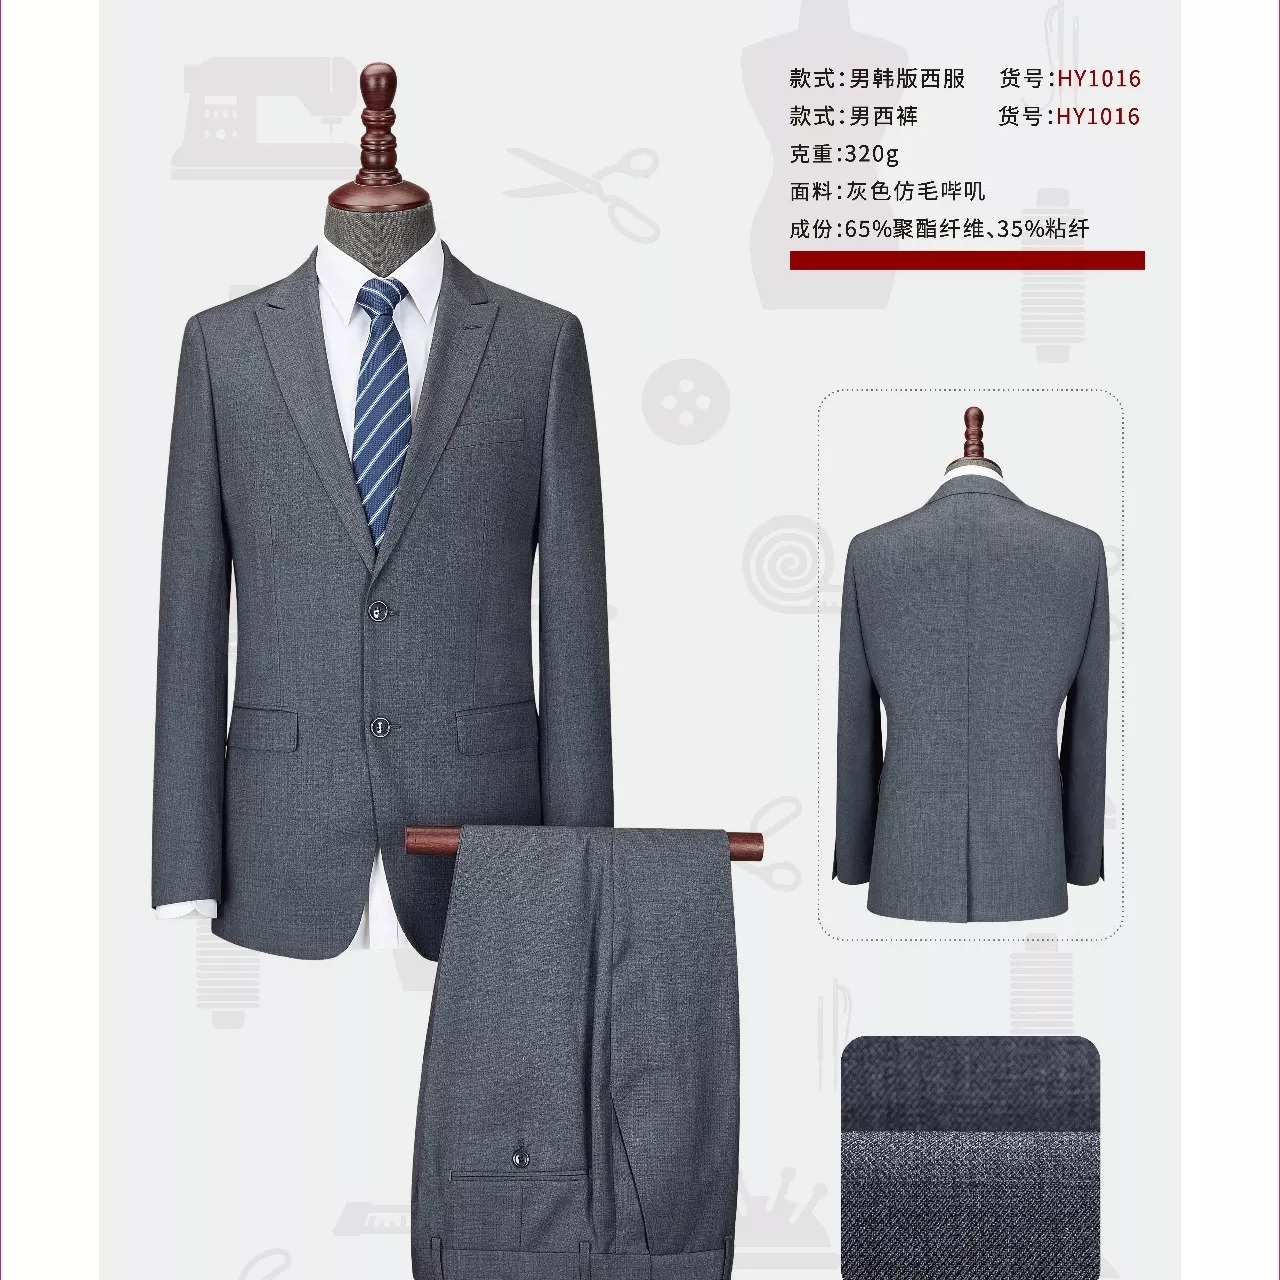 西安职业西装动做 时尚设计 款式新颖 男式西服套装6